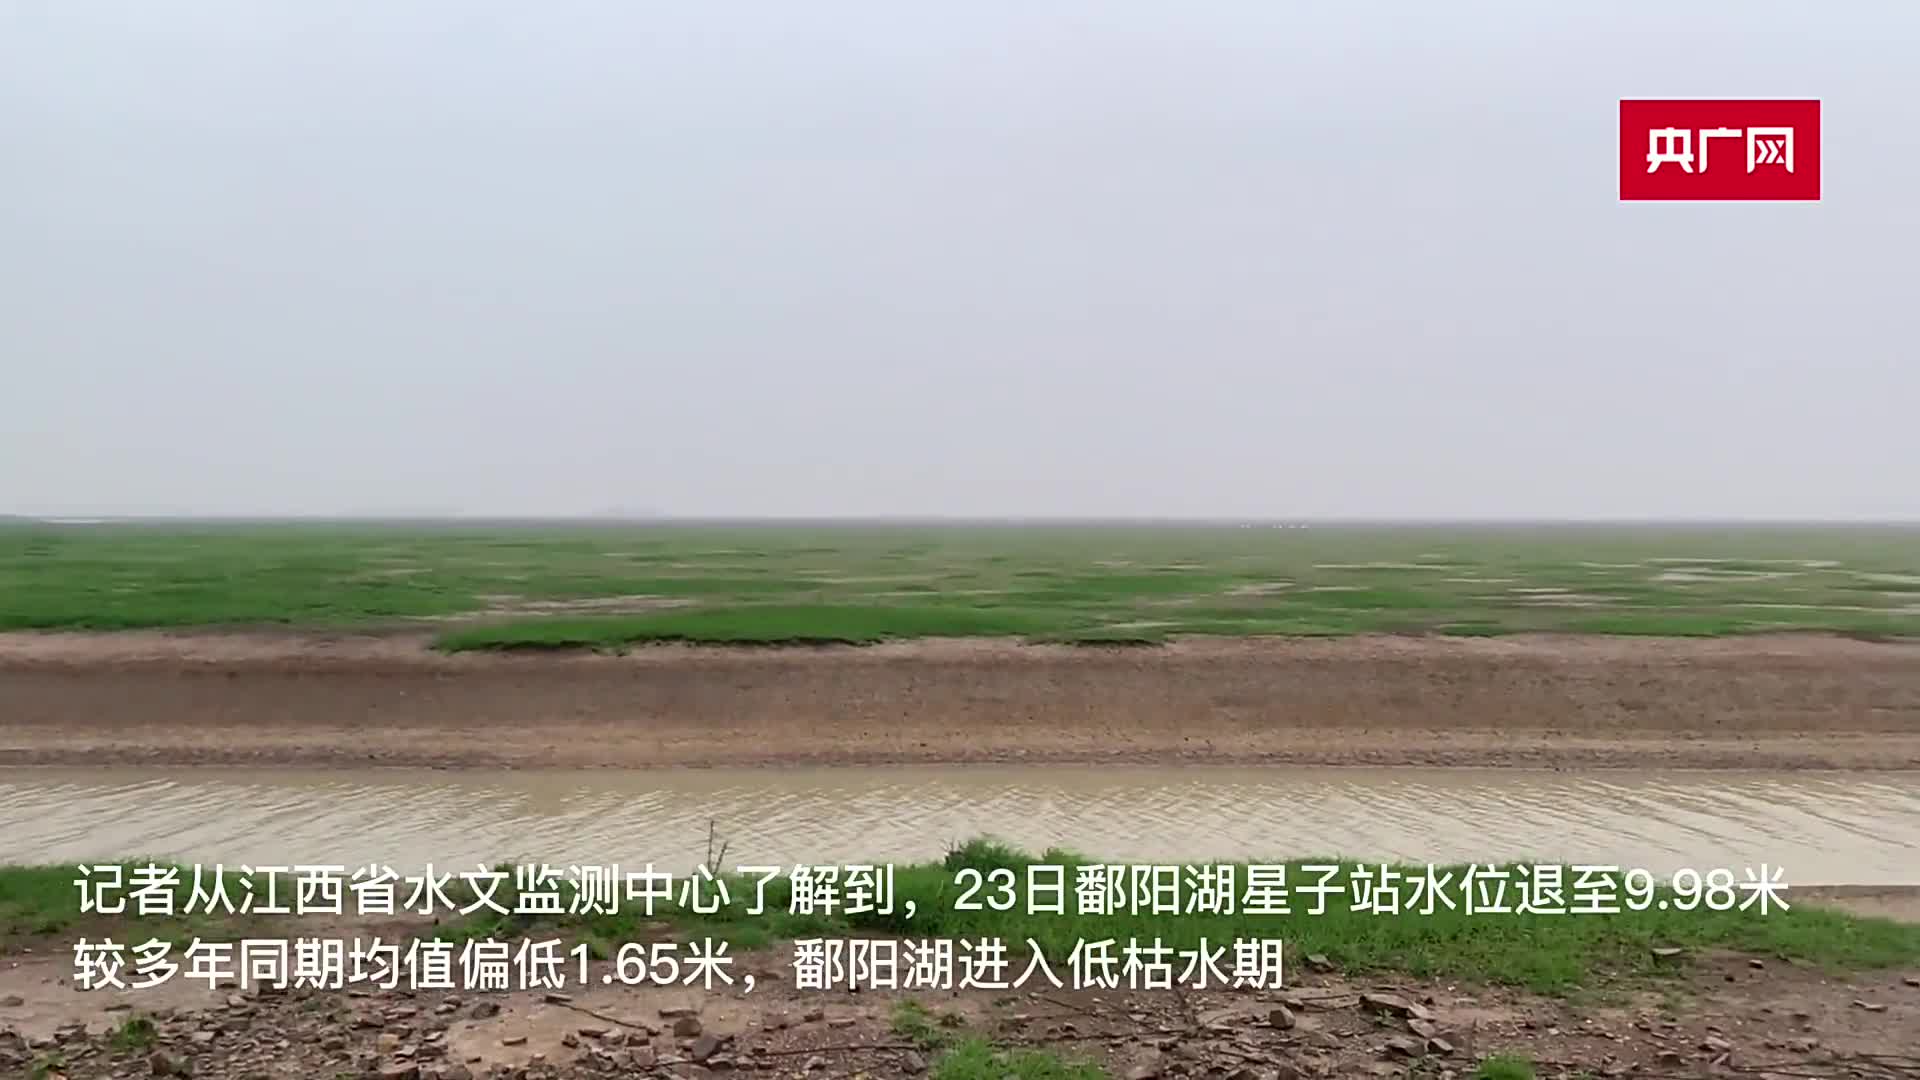 肖江峰)11月23日,记者从江西省水文监测中心了解到,鄱阳湖星子站水位